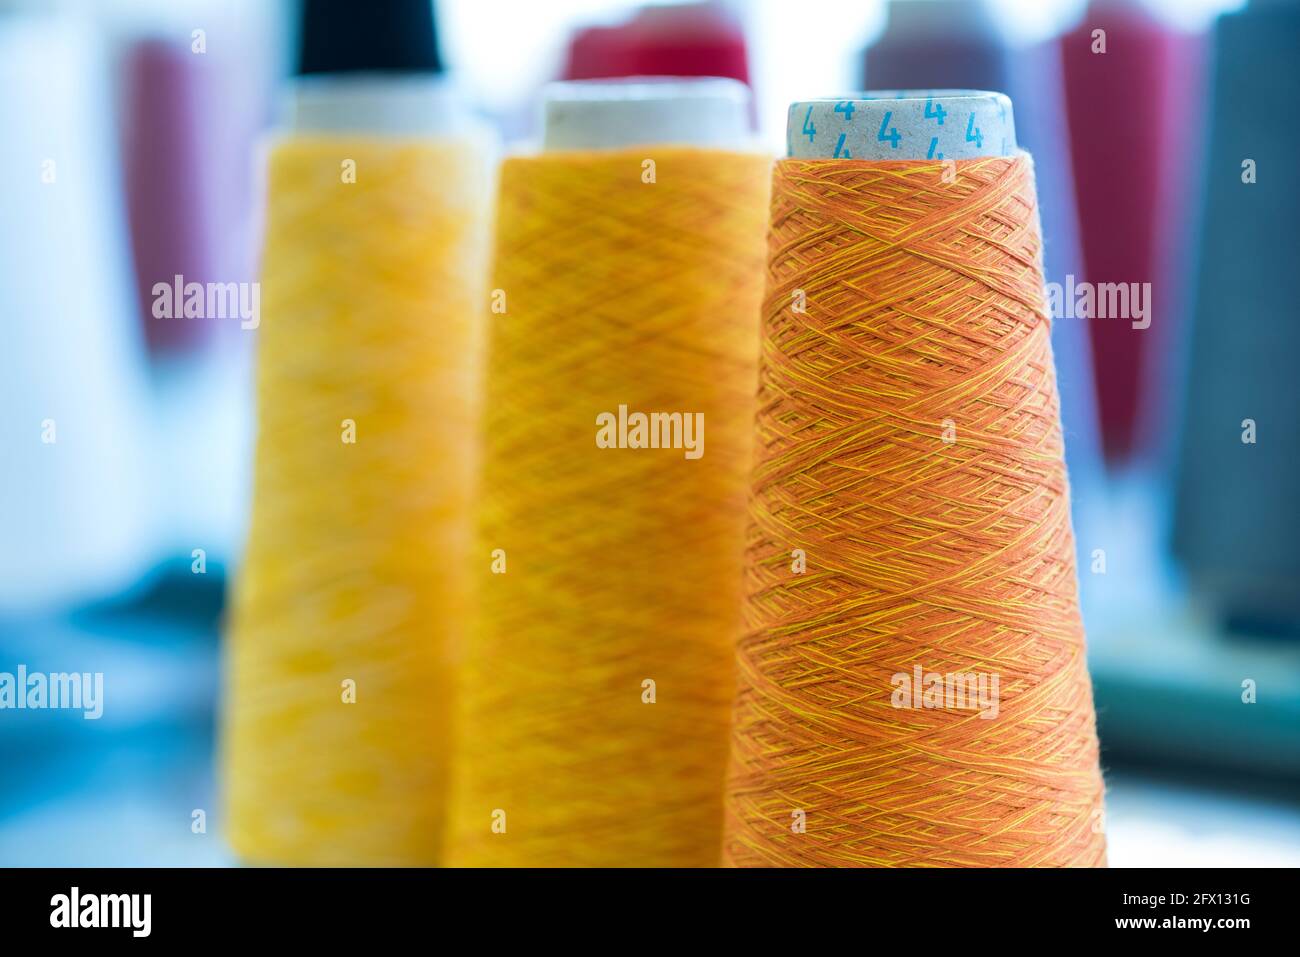 Drei konische Spulen aus buntem, gelbem und orangefarbenem Kaschmirgarn In einer Strickfabrik mit Fokus auf die orangene Rolle Im Vordergrund Stockfoto